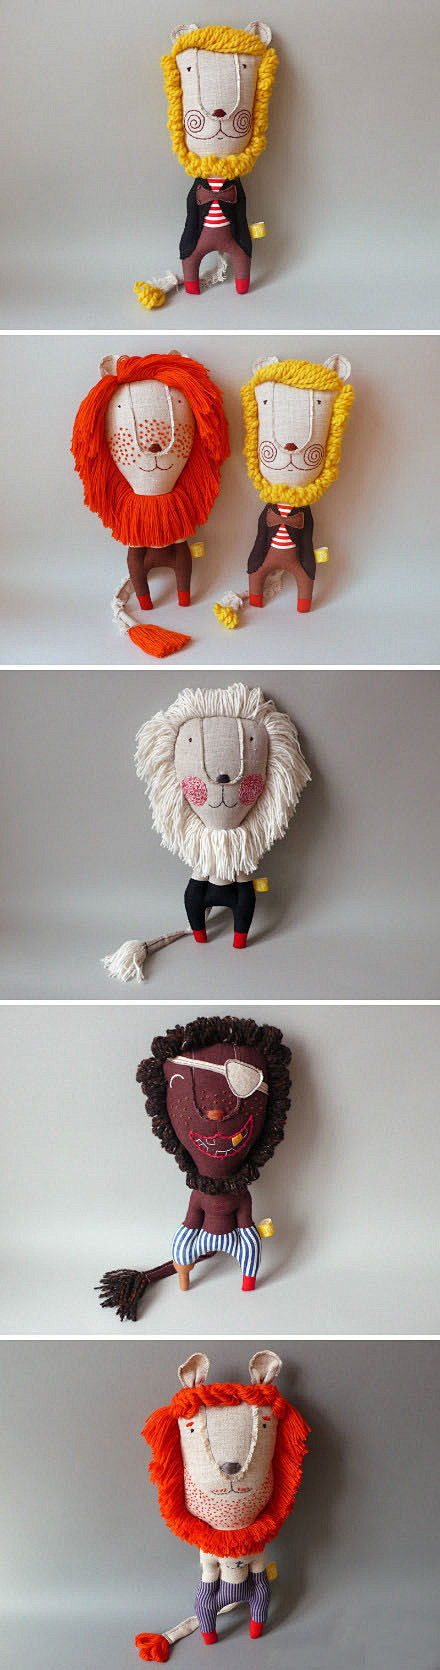 狮子布偶
创意DIY
via @luse...